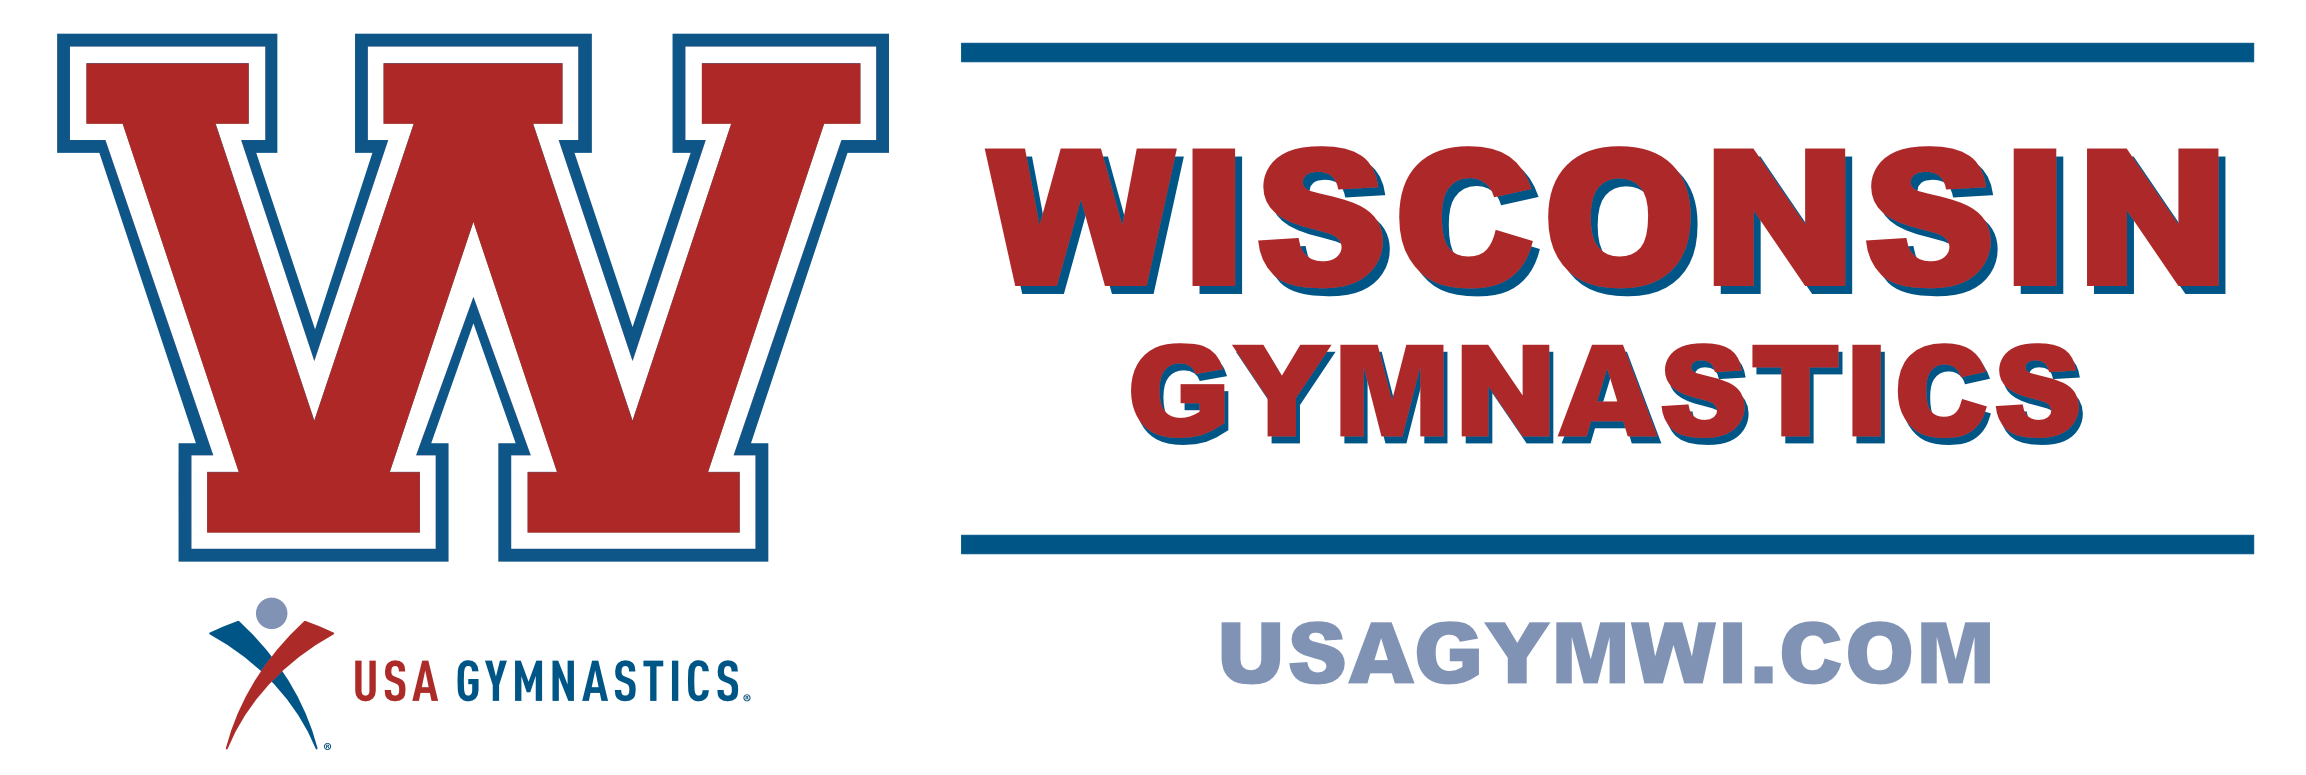 USA Gymnastics - Wisconsin